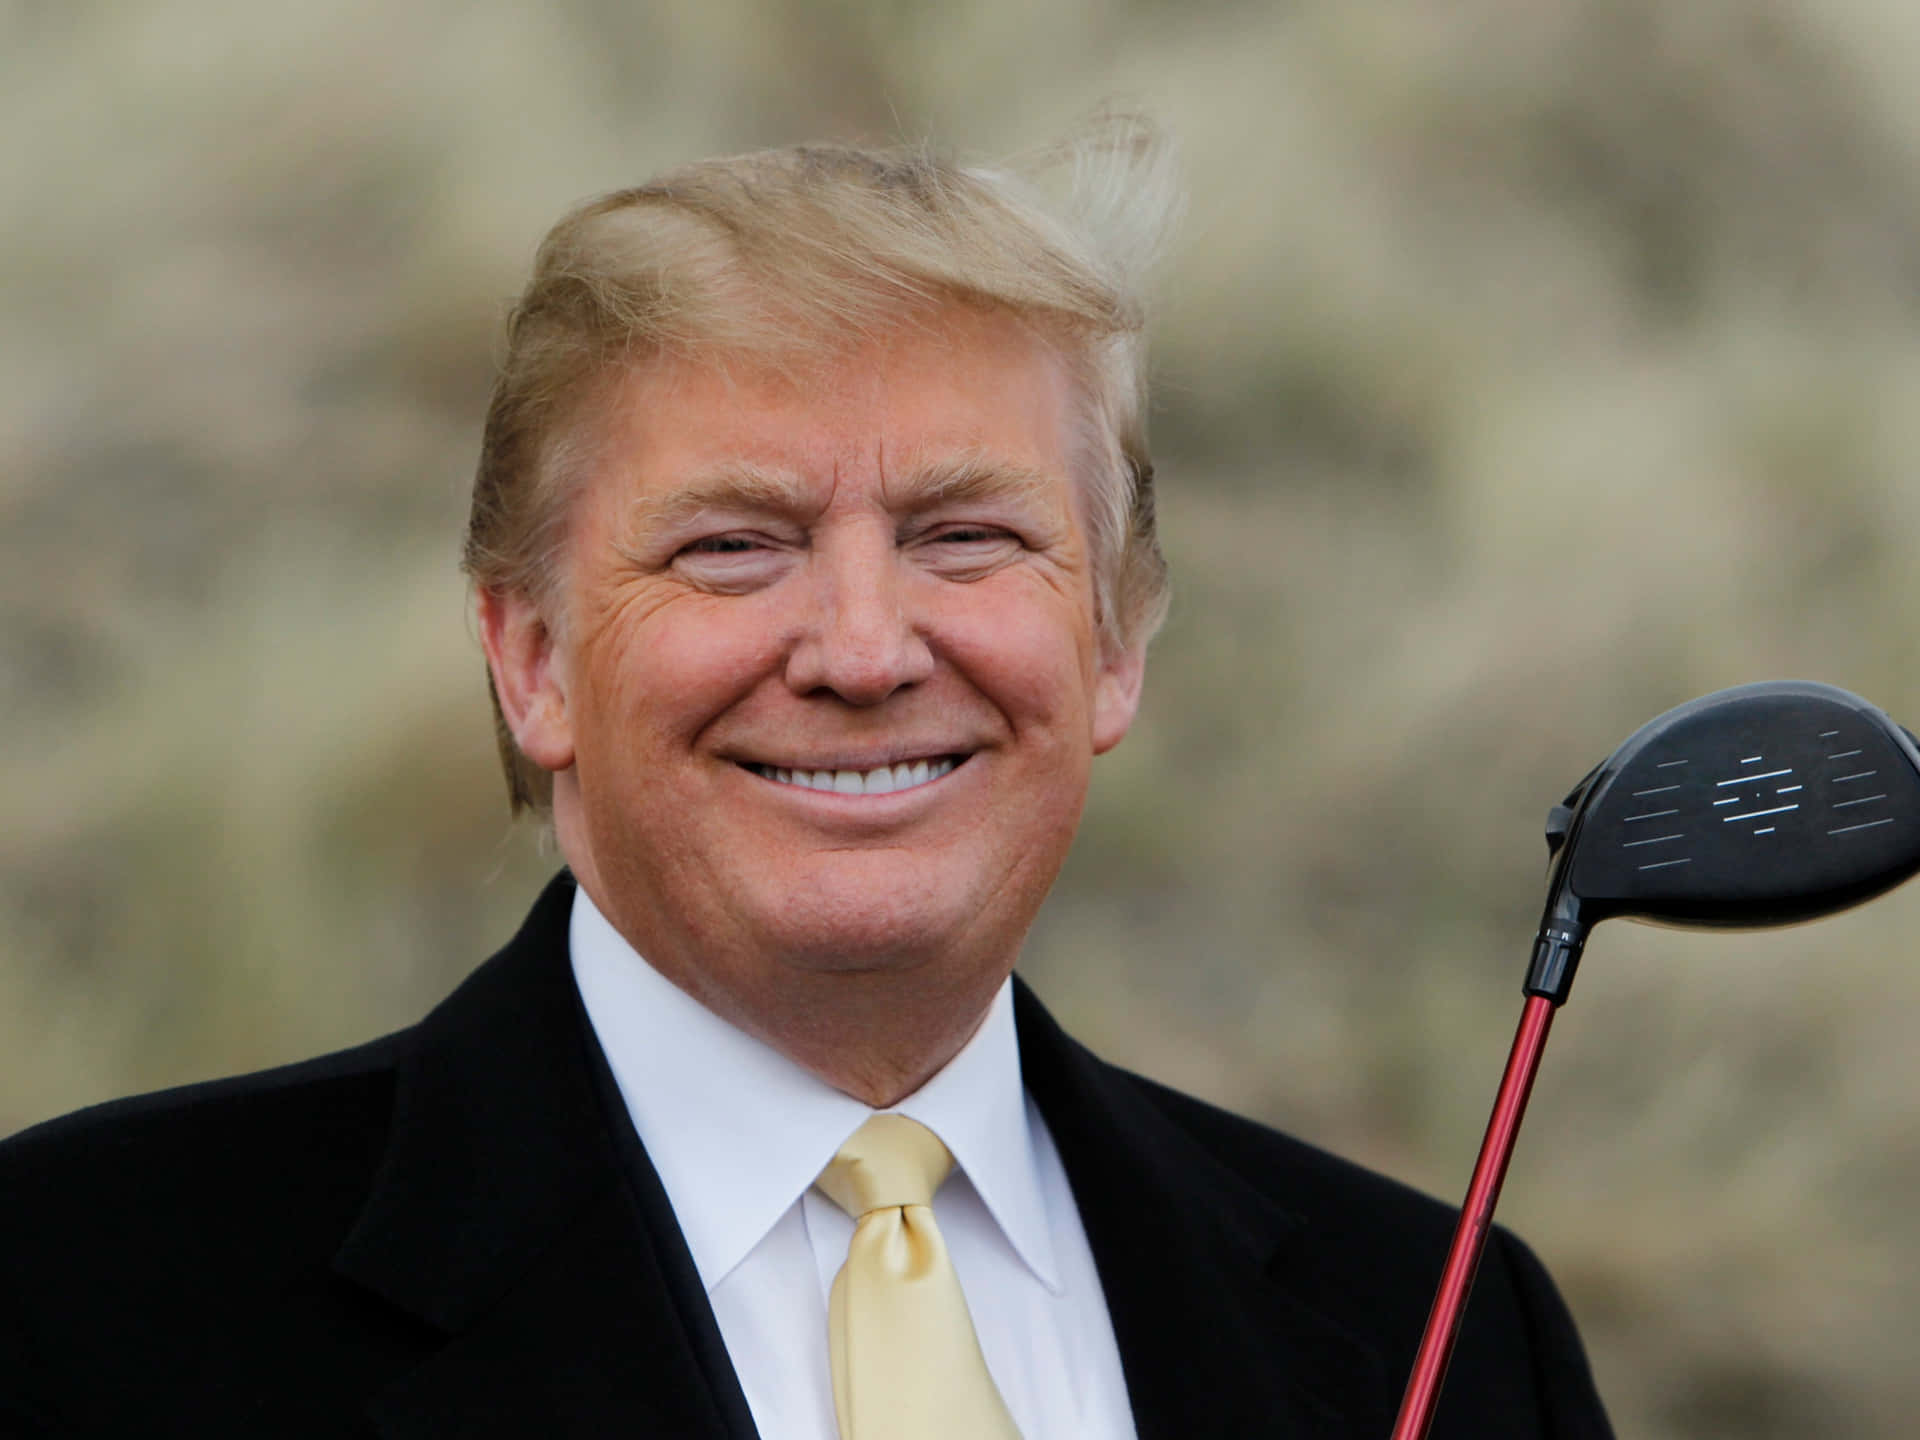 L'expresidente Donald Trump Sorride Con La Sua Iconica Cravatta Rossa.